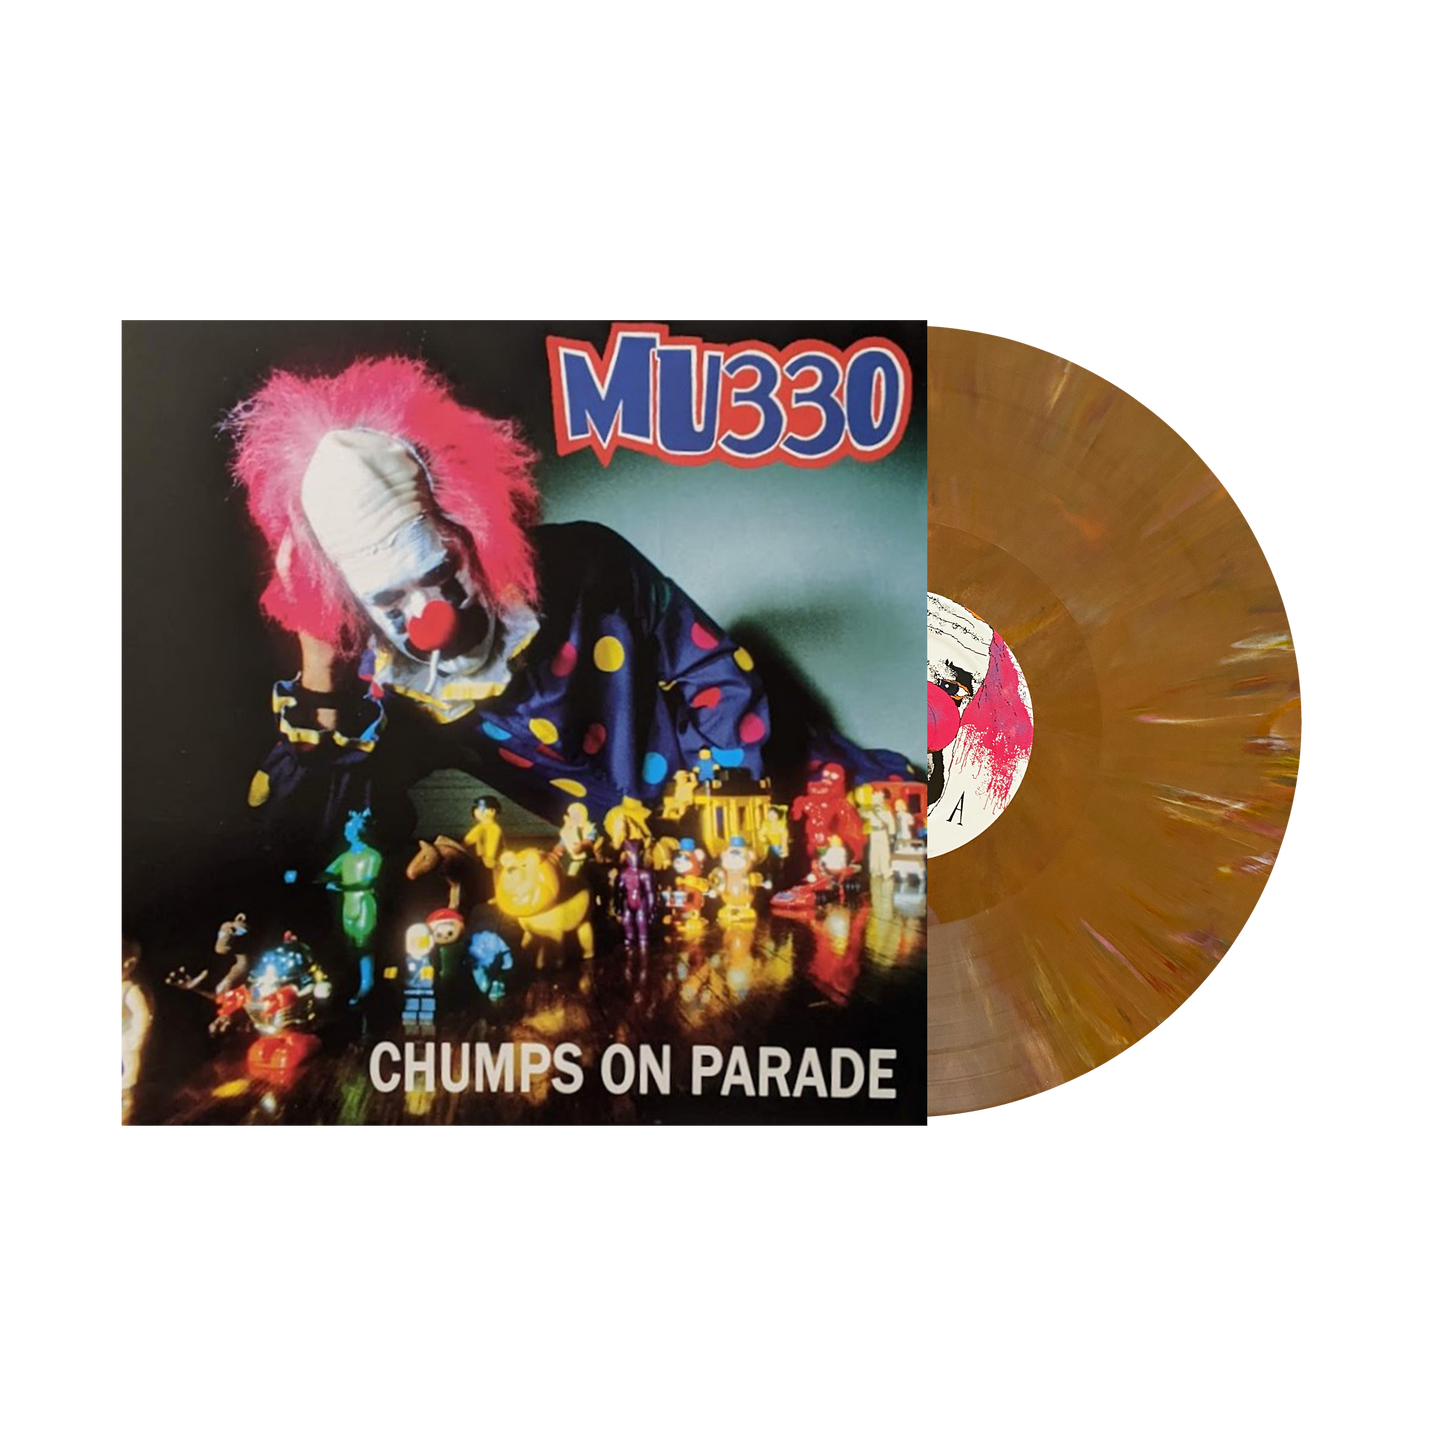 MU330 "Chumps On Parade" LP